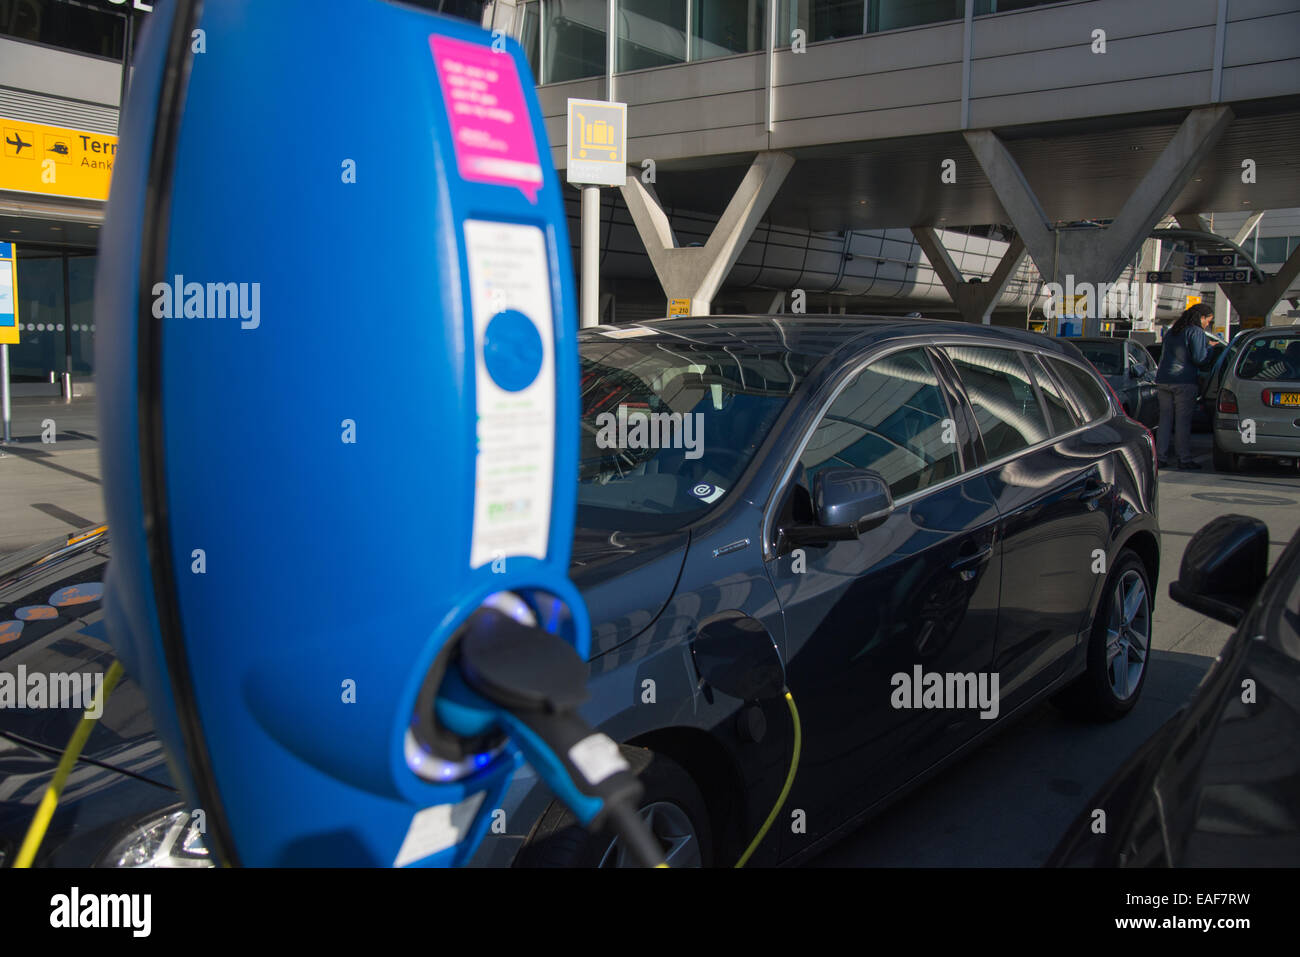 Parking pour voitures électriques qu'à l'aéroport de Schiphol Amsterdam Pays-Bas Banque D'Images